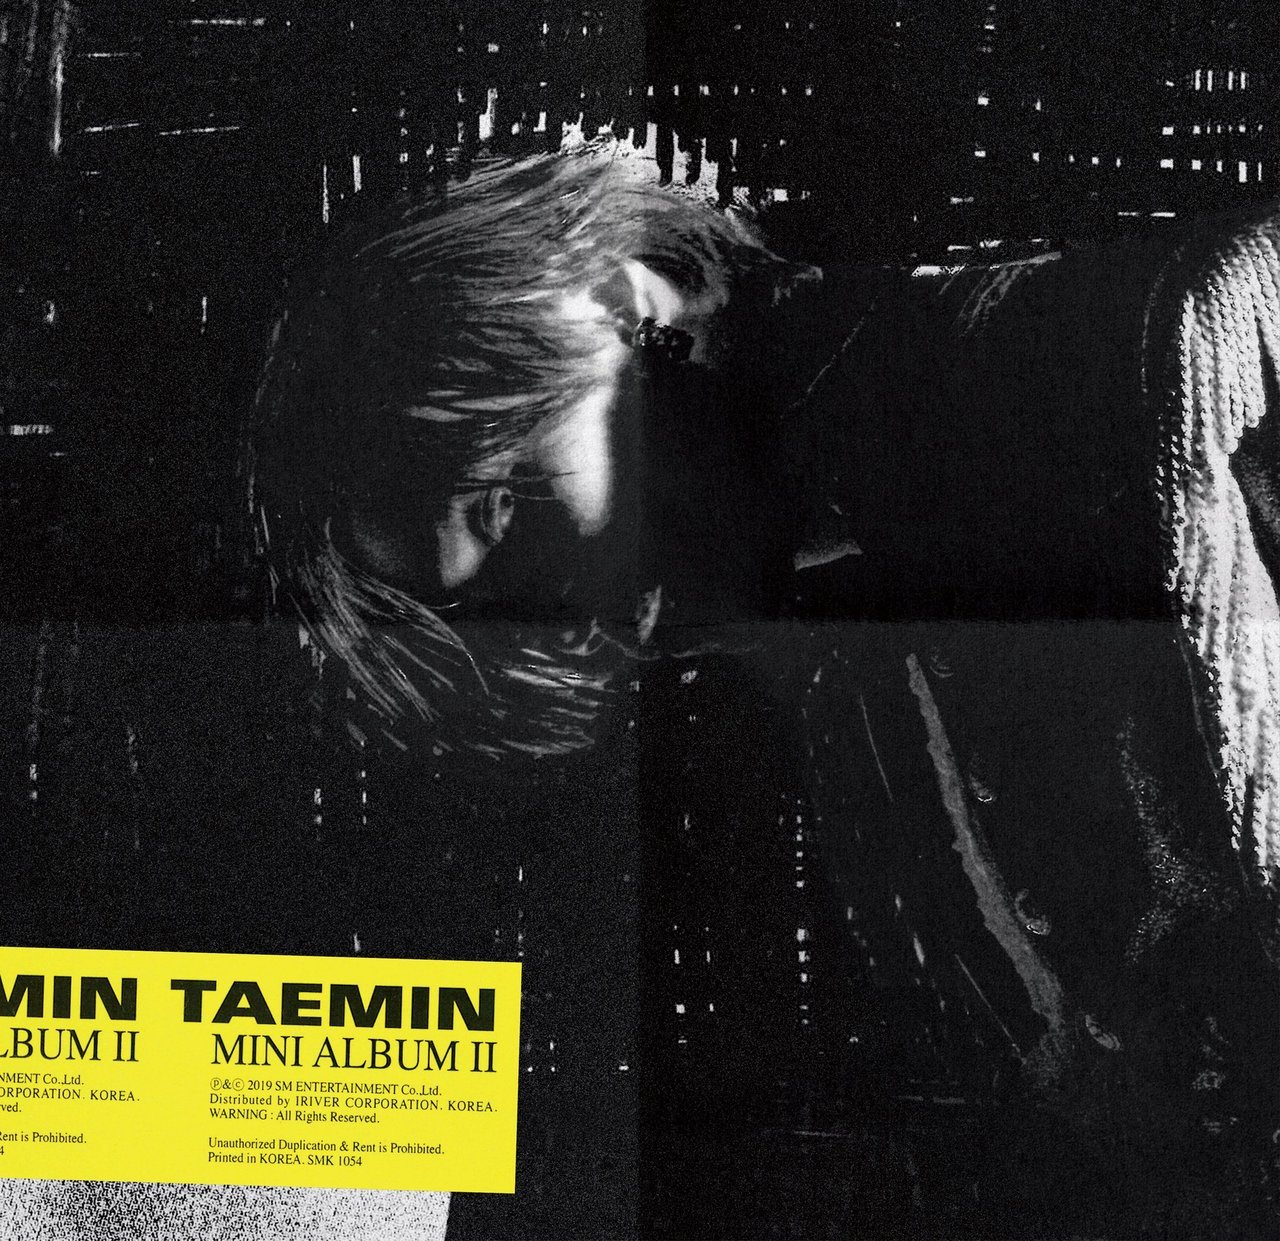 [РЕЛИЗ] Тэмин из SHINee вернулся с новым альбомом и клипом на песню "Want"